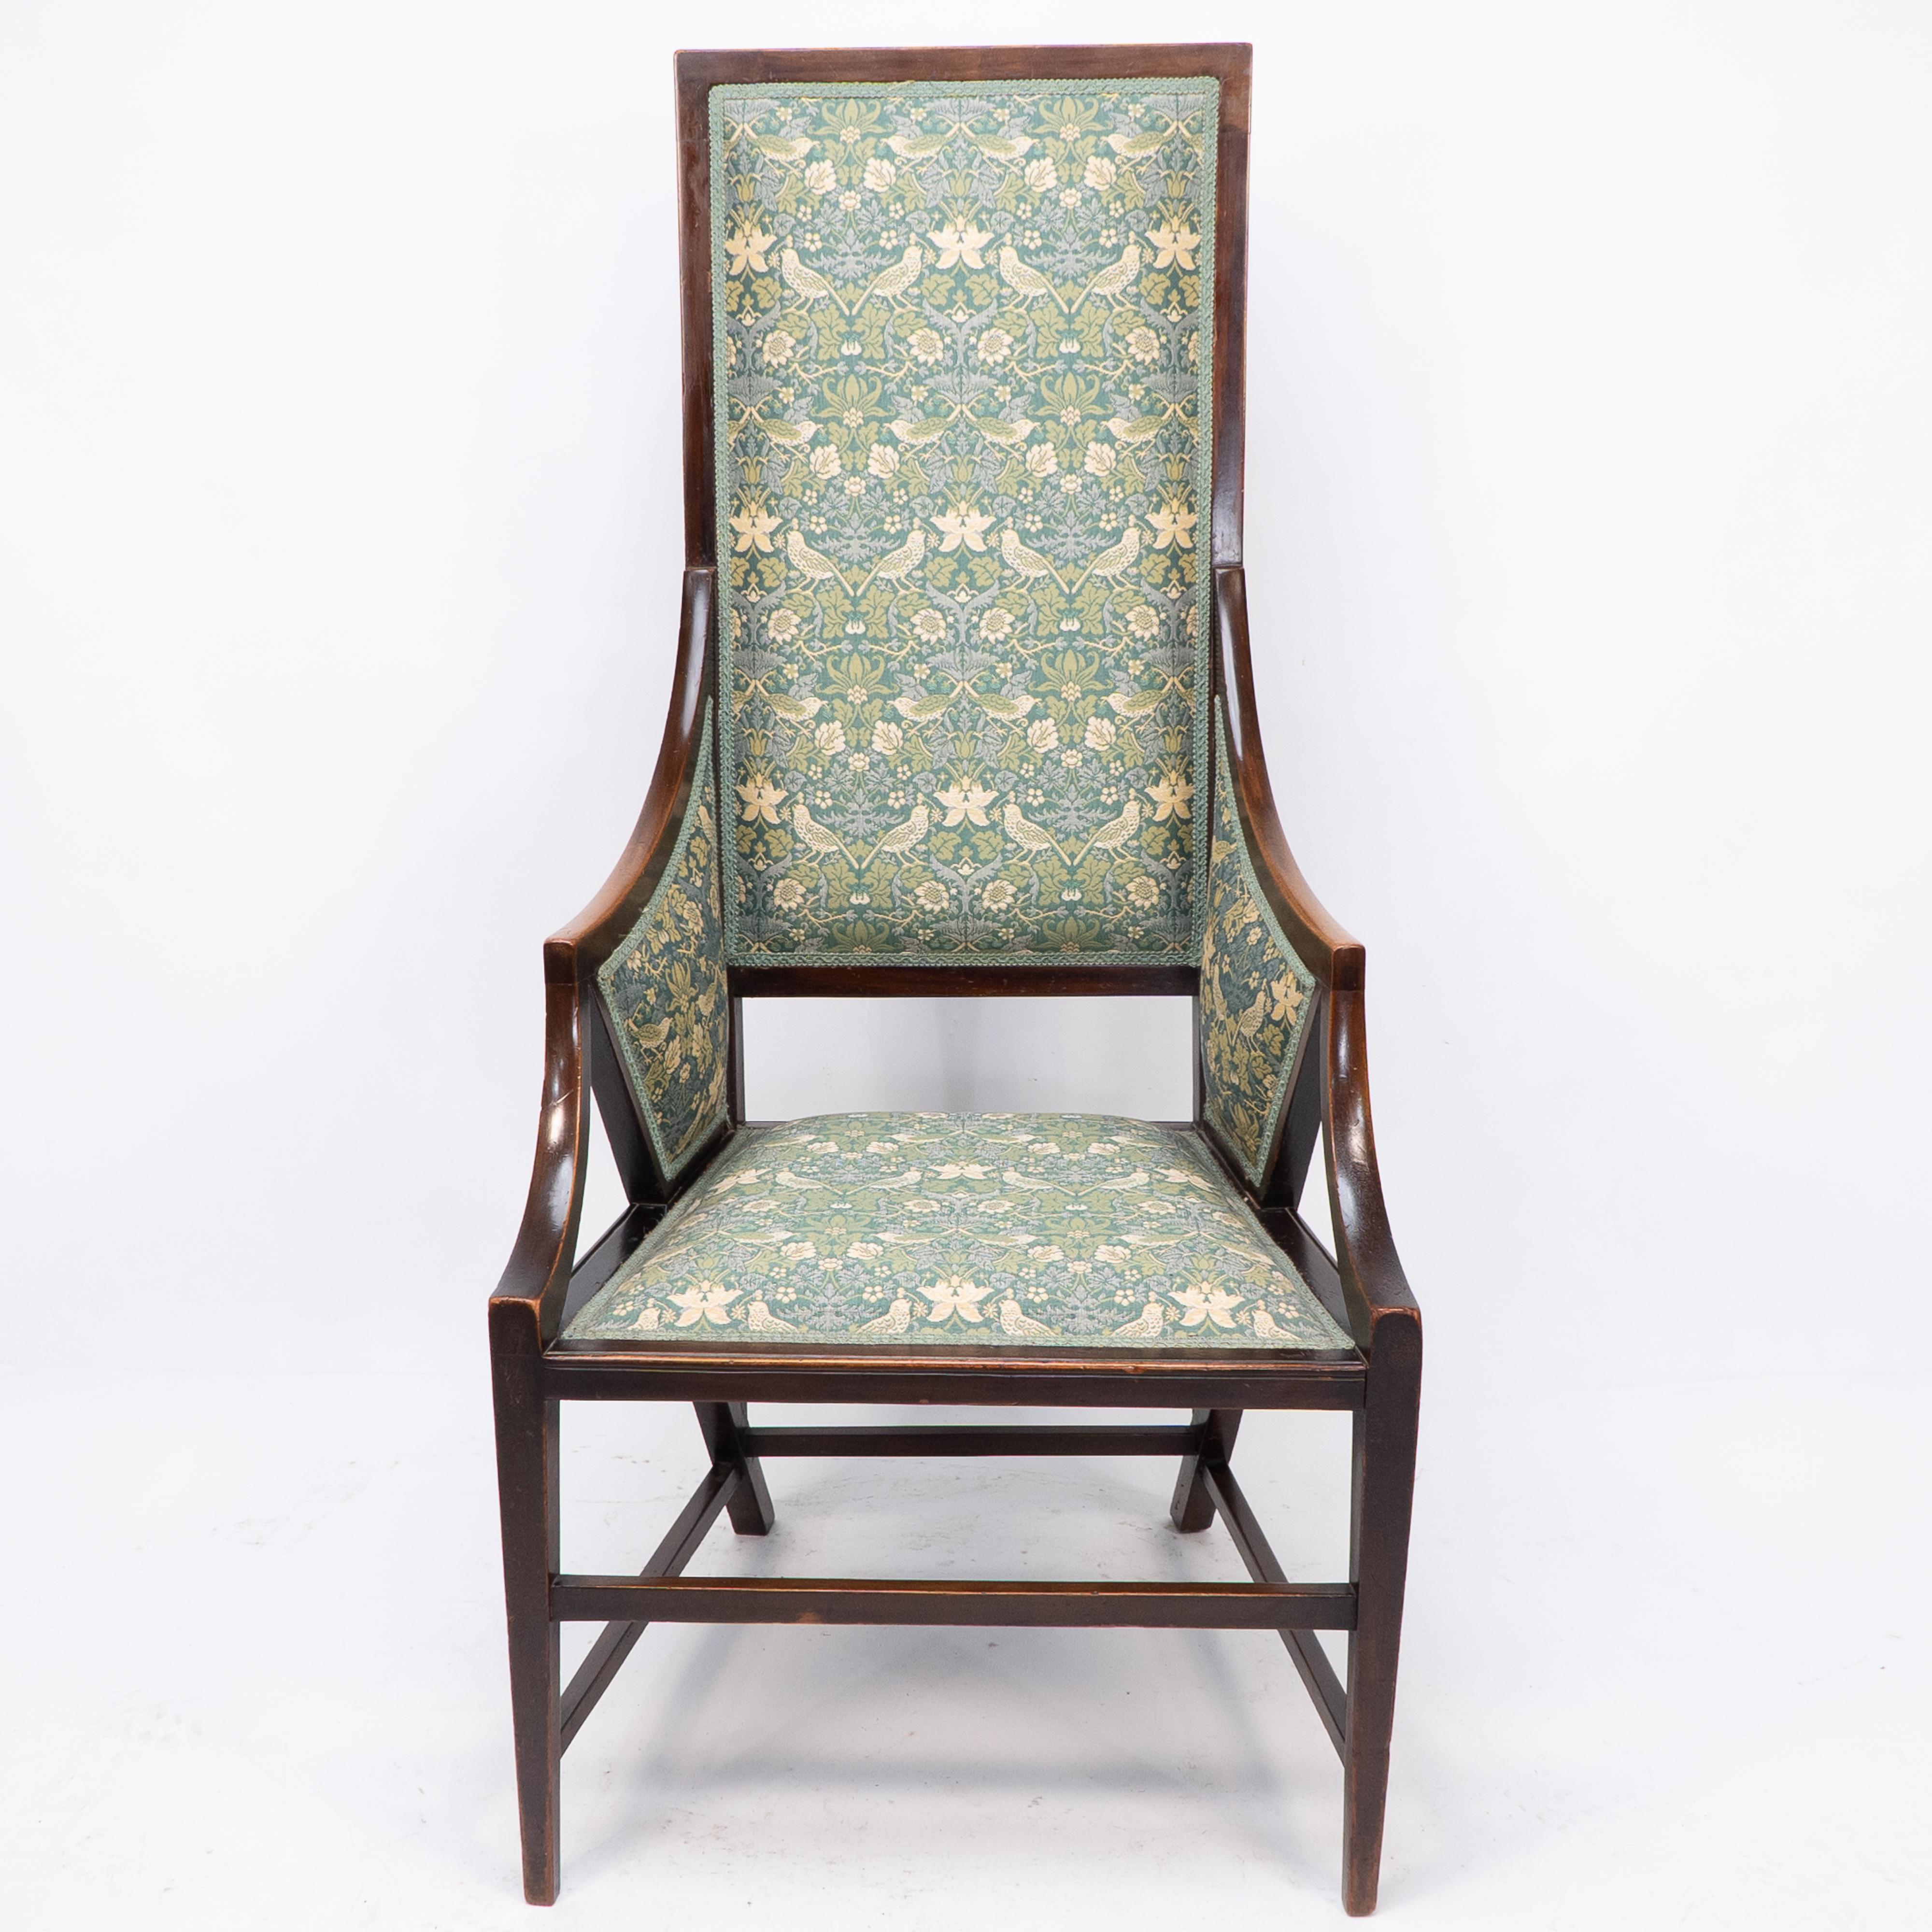 Giacomo Cometti. Ein anspruchsvoller Sessel im anglo-japanischen Stil mit kantigem Design. Die hohe Rückenlehne sitzt auf der Rückseite der Hinterbeine, die wiederum über die Sitzfläche mit den Armlehnen verbunden sind und stilistische Flügelformen